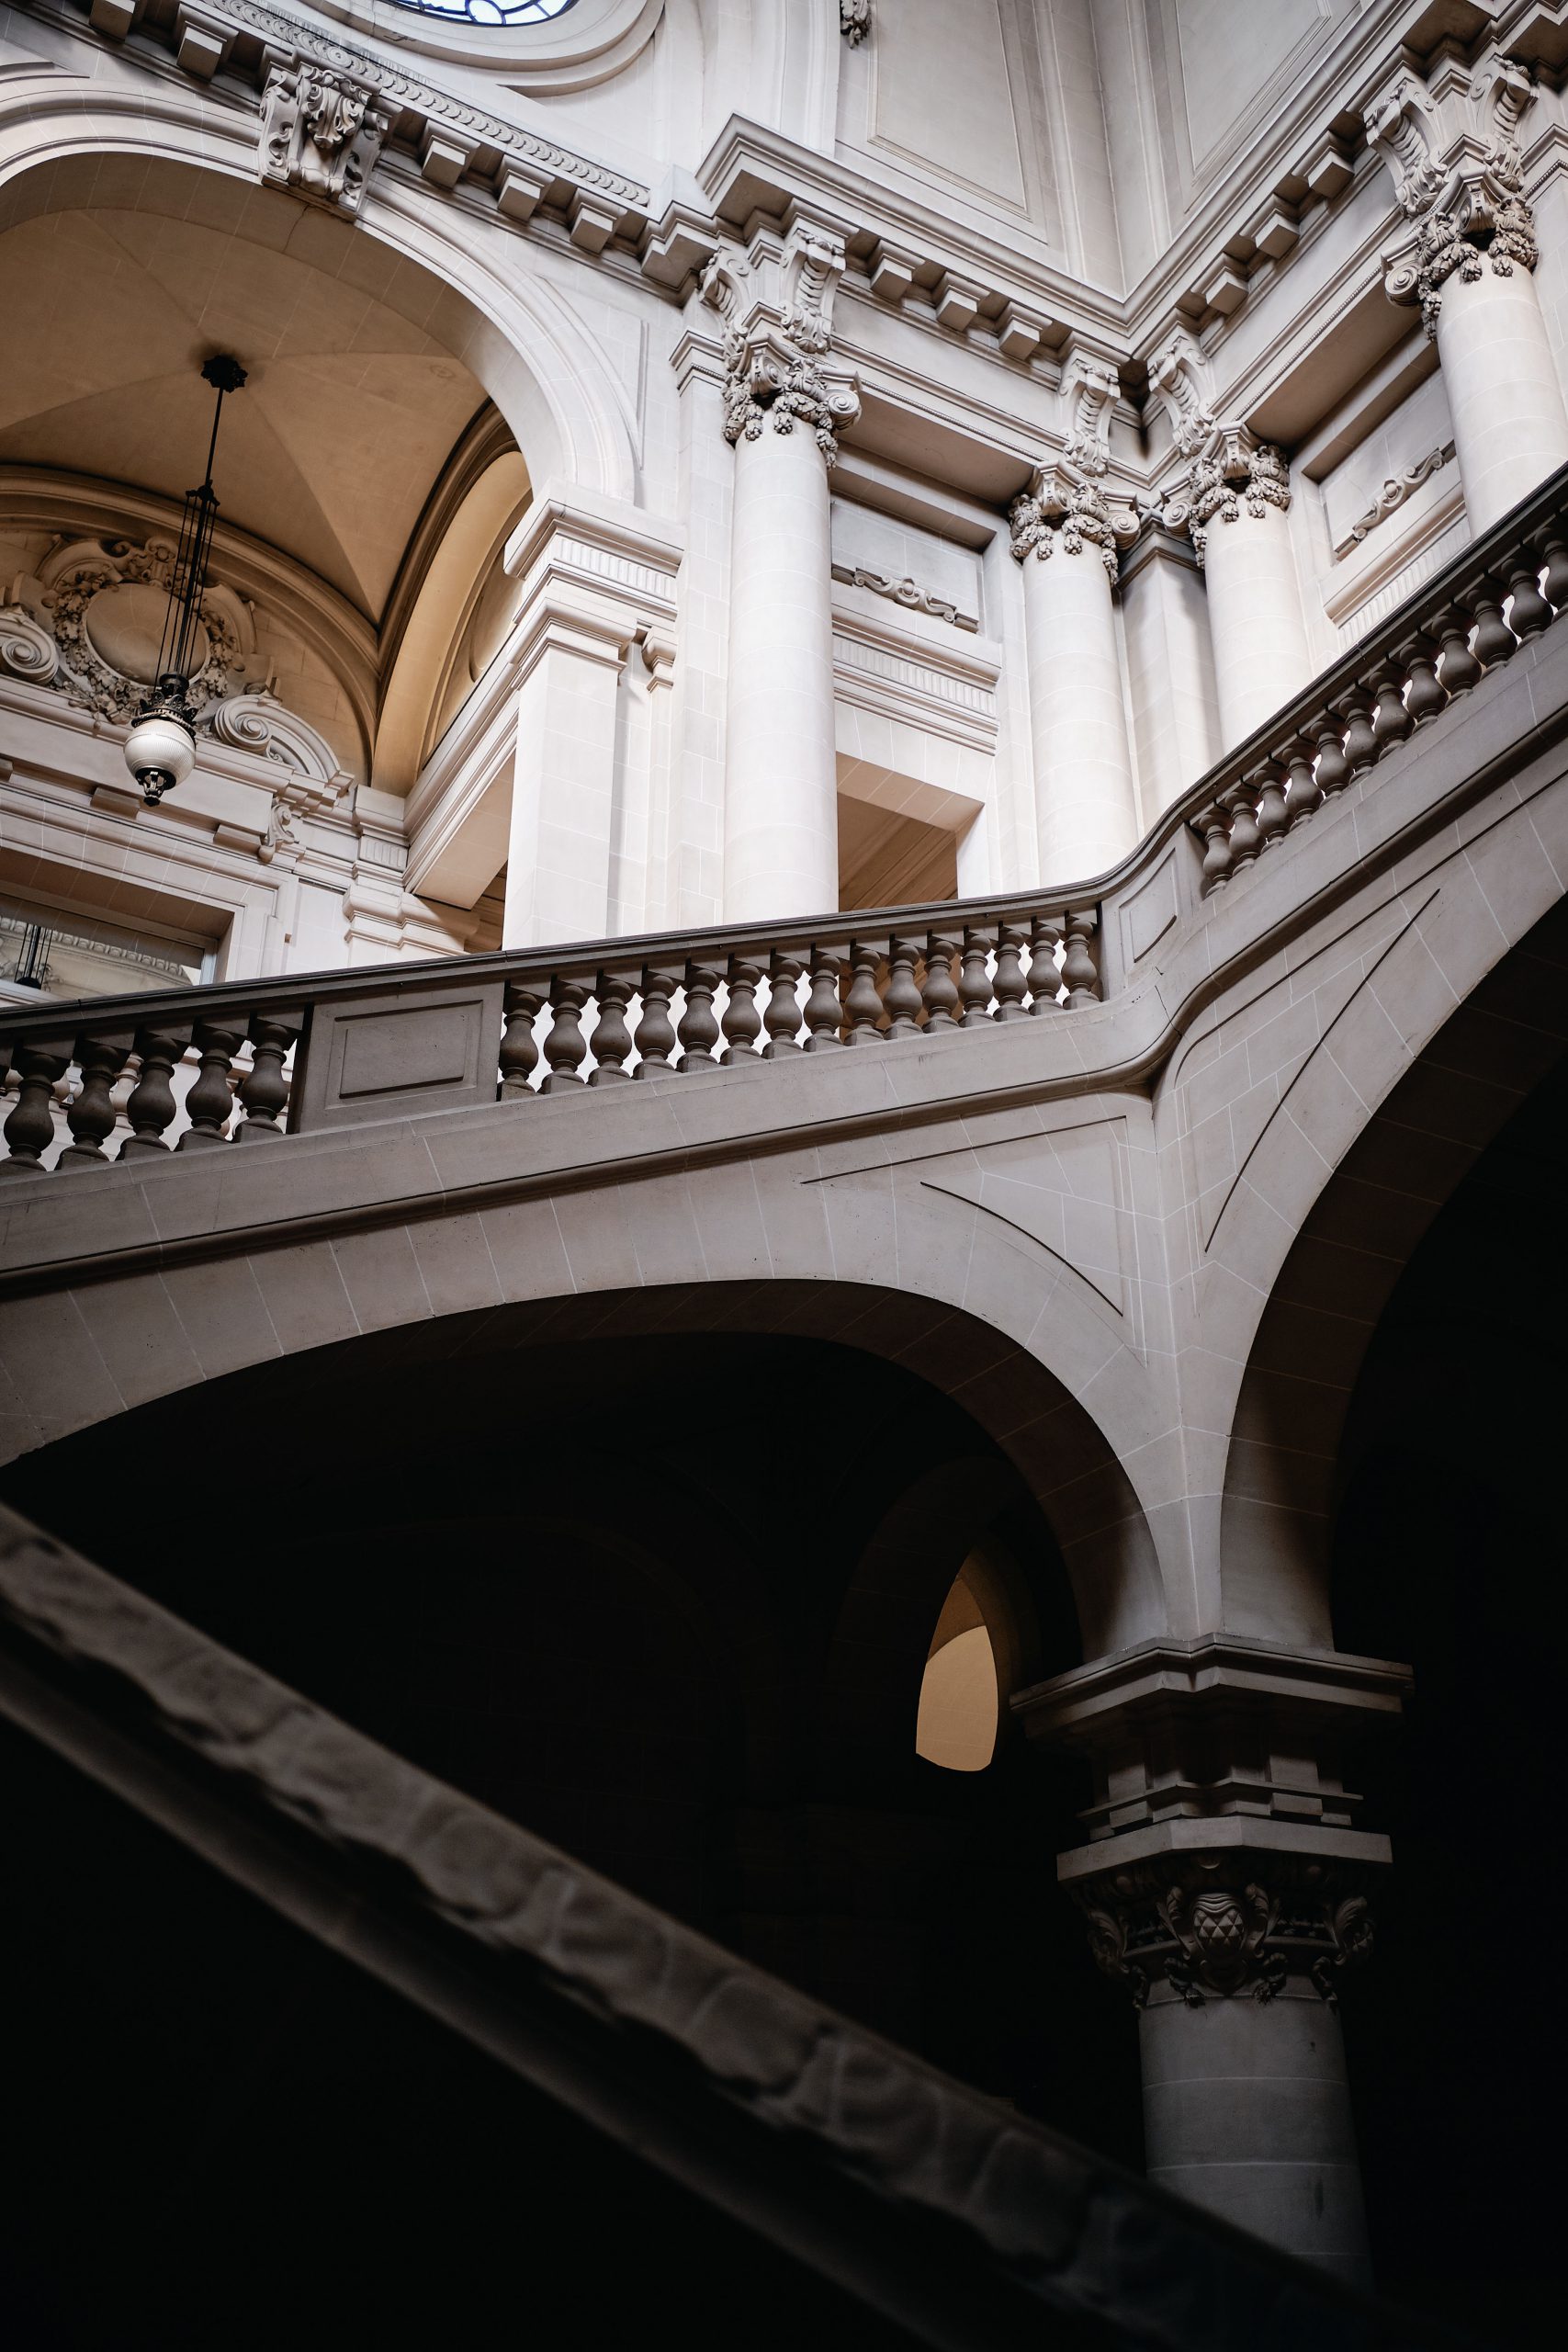 Soluzione di sicurezza per edifici storici Milano e provincia